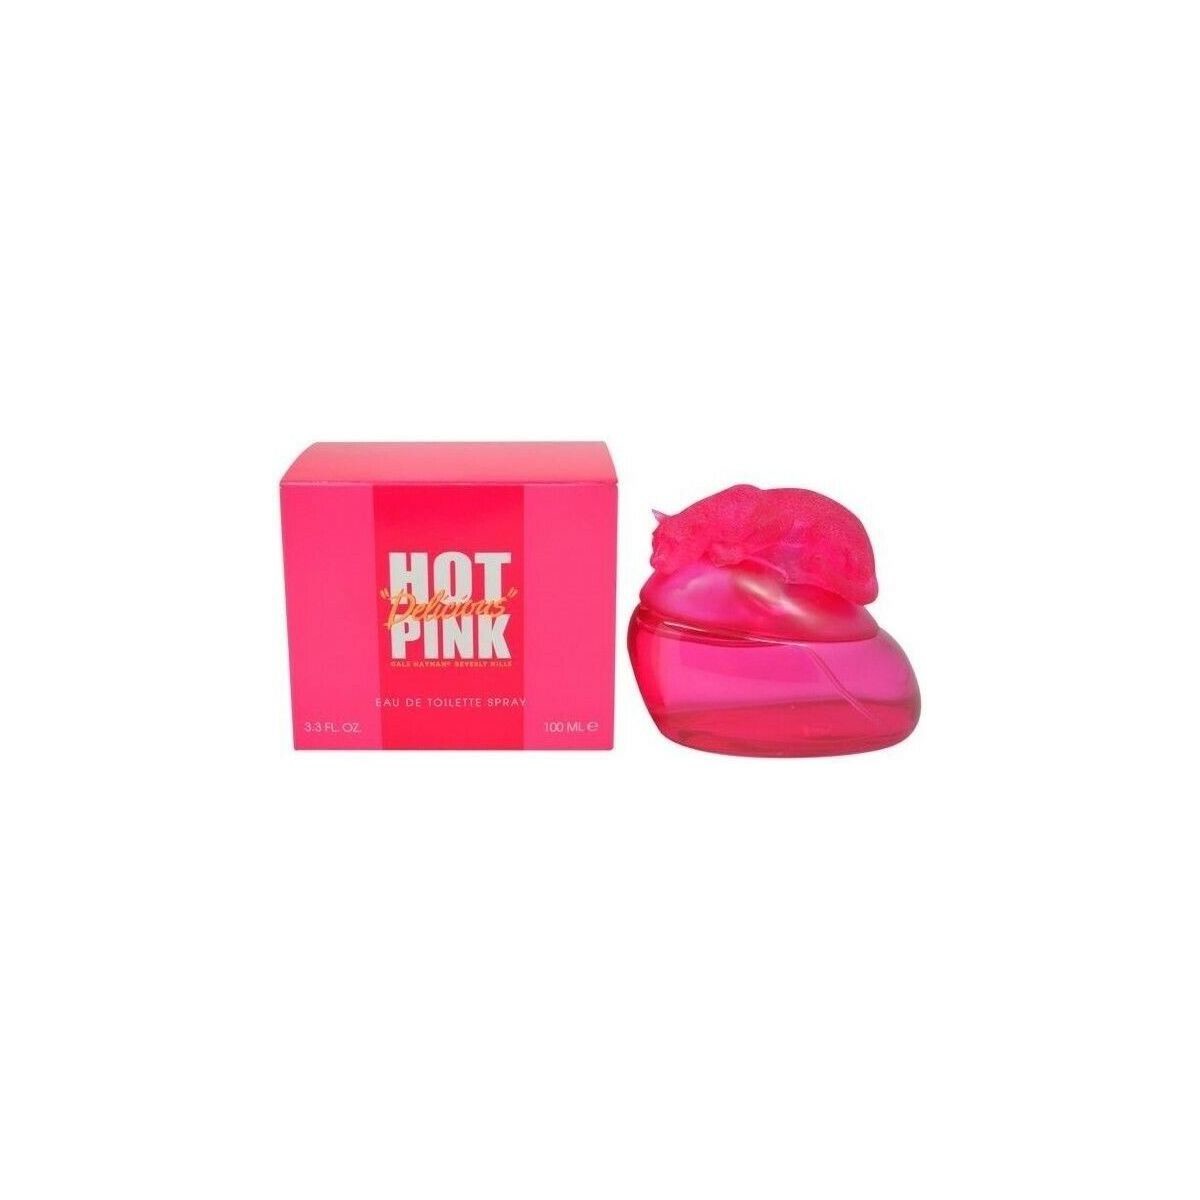 Beauty Damen Kölnisch Wasser Giorgio Beverly Hills Hot Pink Delicious  -köln - 100ml - VERDAMPFER Hot Pink Delicious  -cologne - 100ml - spray